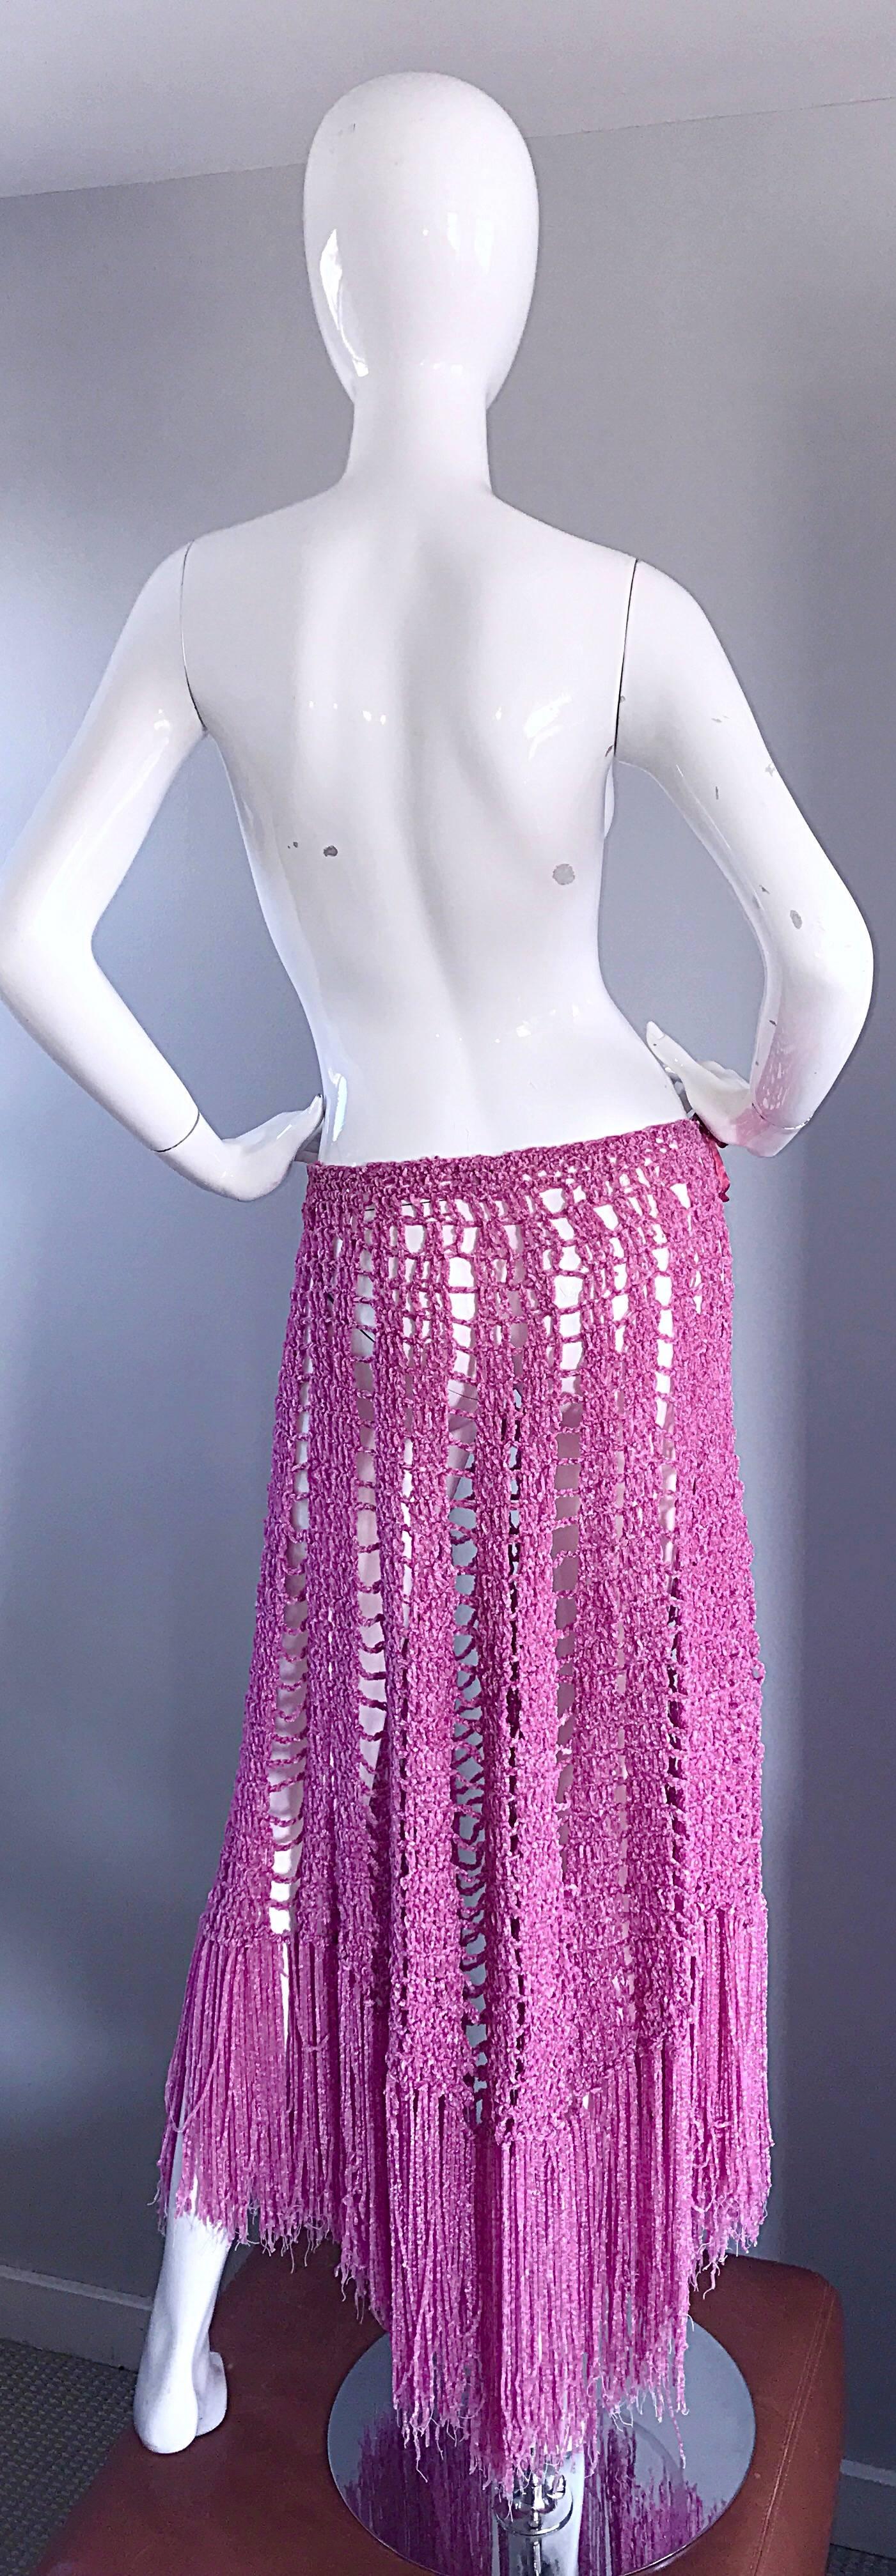 Joseph Magnin 1970s Brand New Pink Vintage Italian Crochet Skirt, Dress or Cape 4